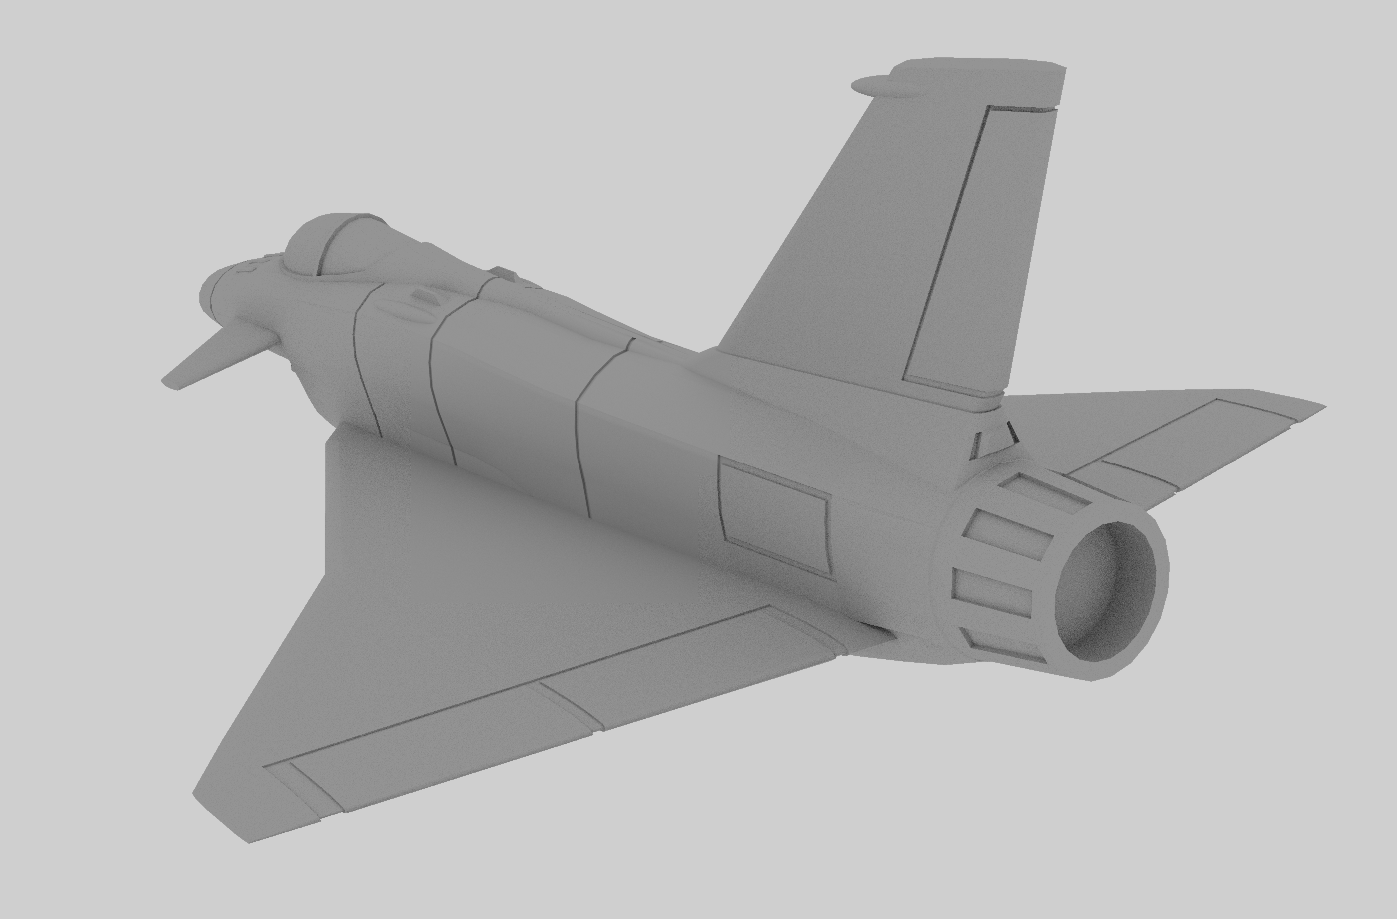 Image-06.png Télécharger fichier STL gratuit Pack F-31 Thunder Shark (Rockwell-MBB X-31) • Design pour imprimante 3D, SpocksGlock